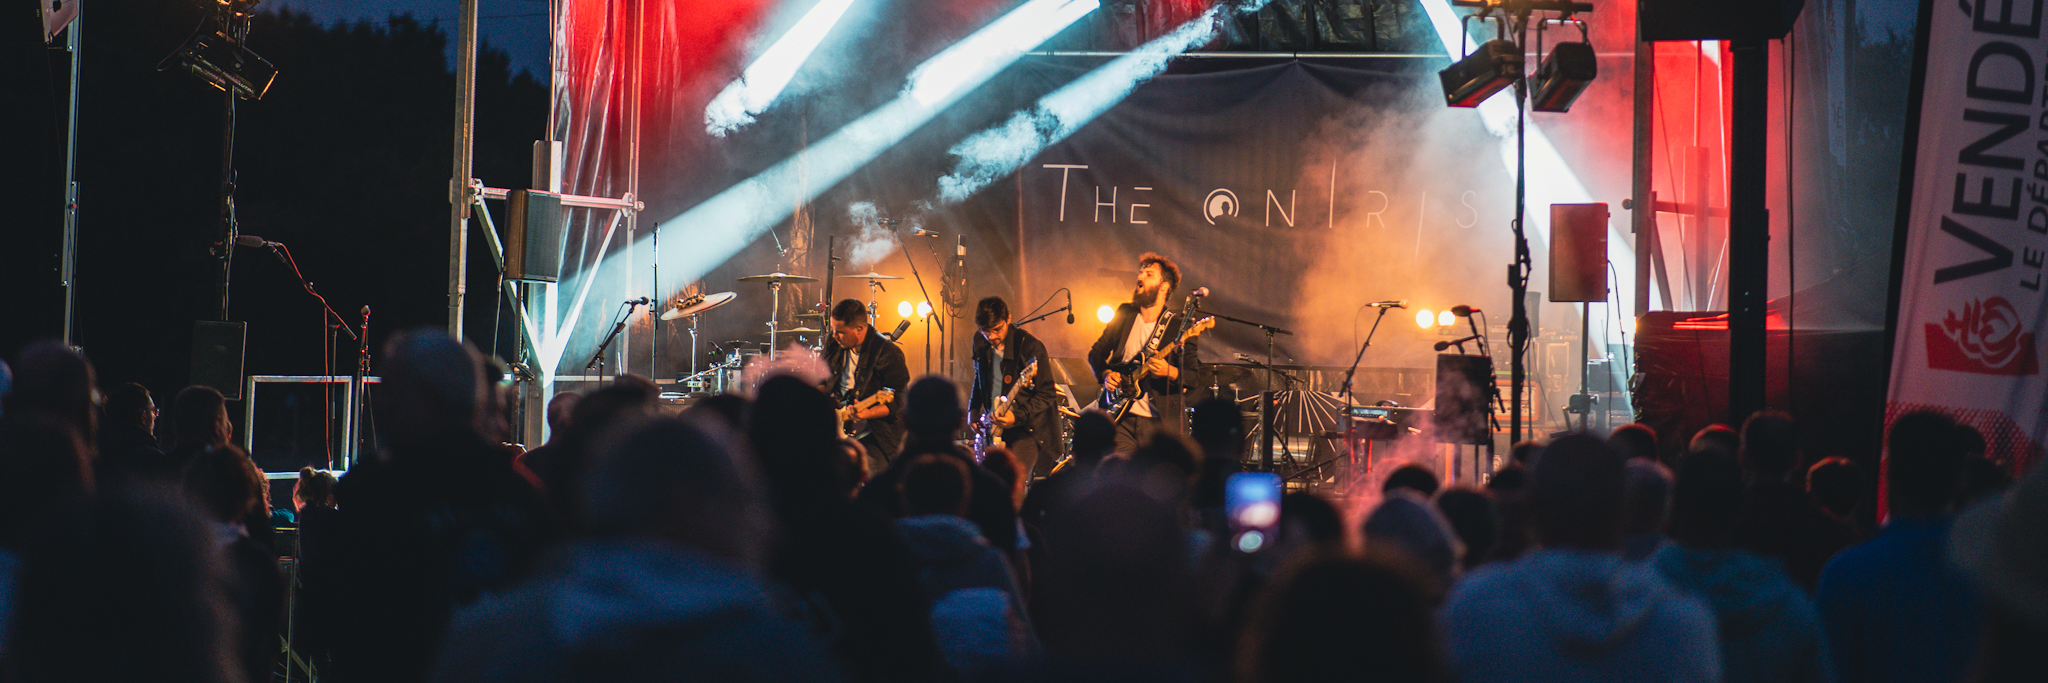 The Onirist, groupe de musique Rock en représentation à Maine et Loire - photo de couverture